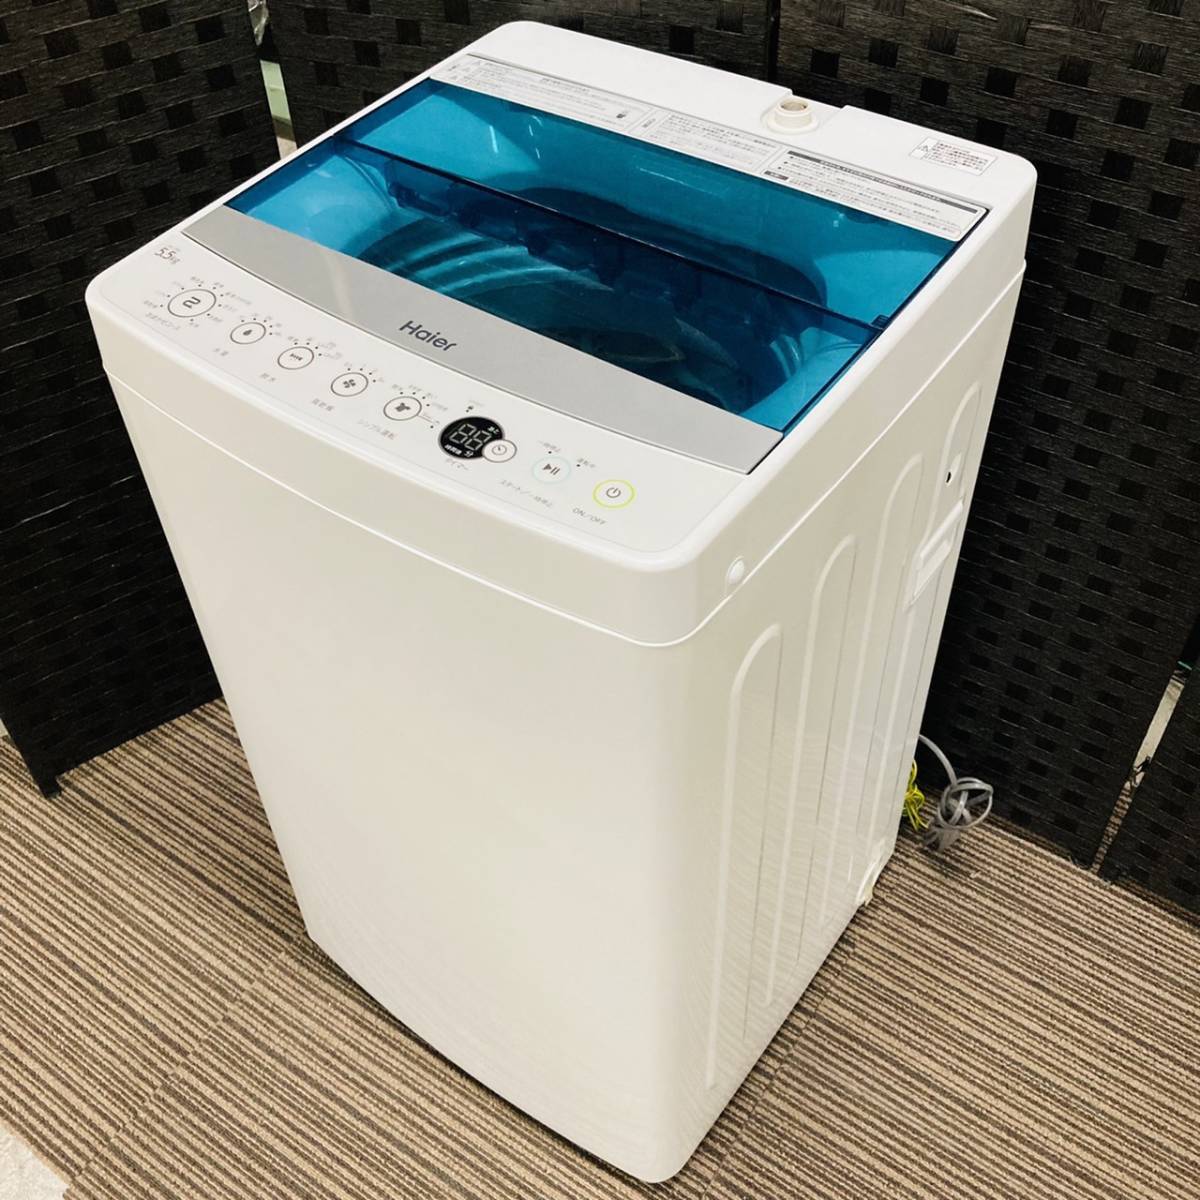 ハイアール 5.5Kg全自動洗濯機 JW-C55A | gatavosim.lv